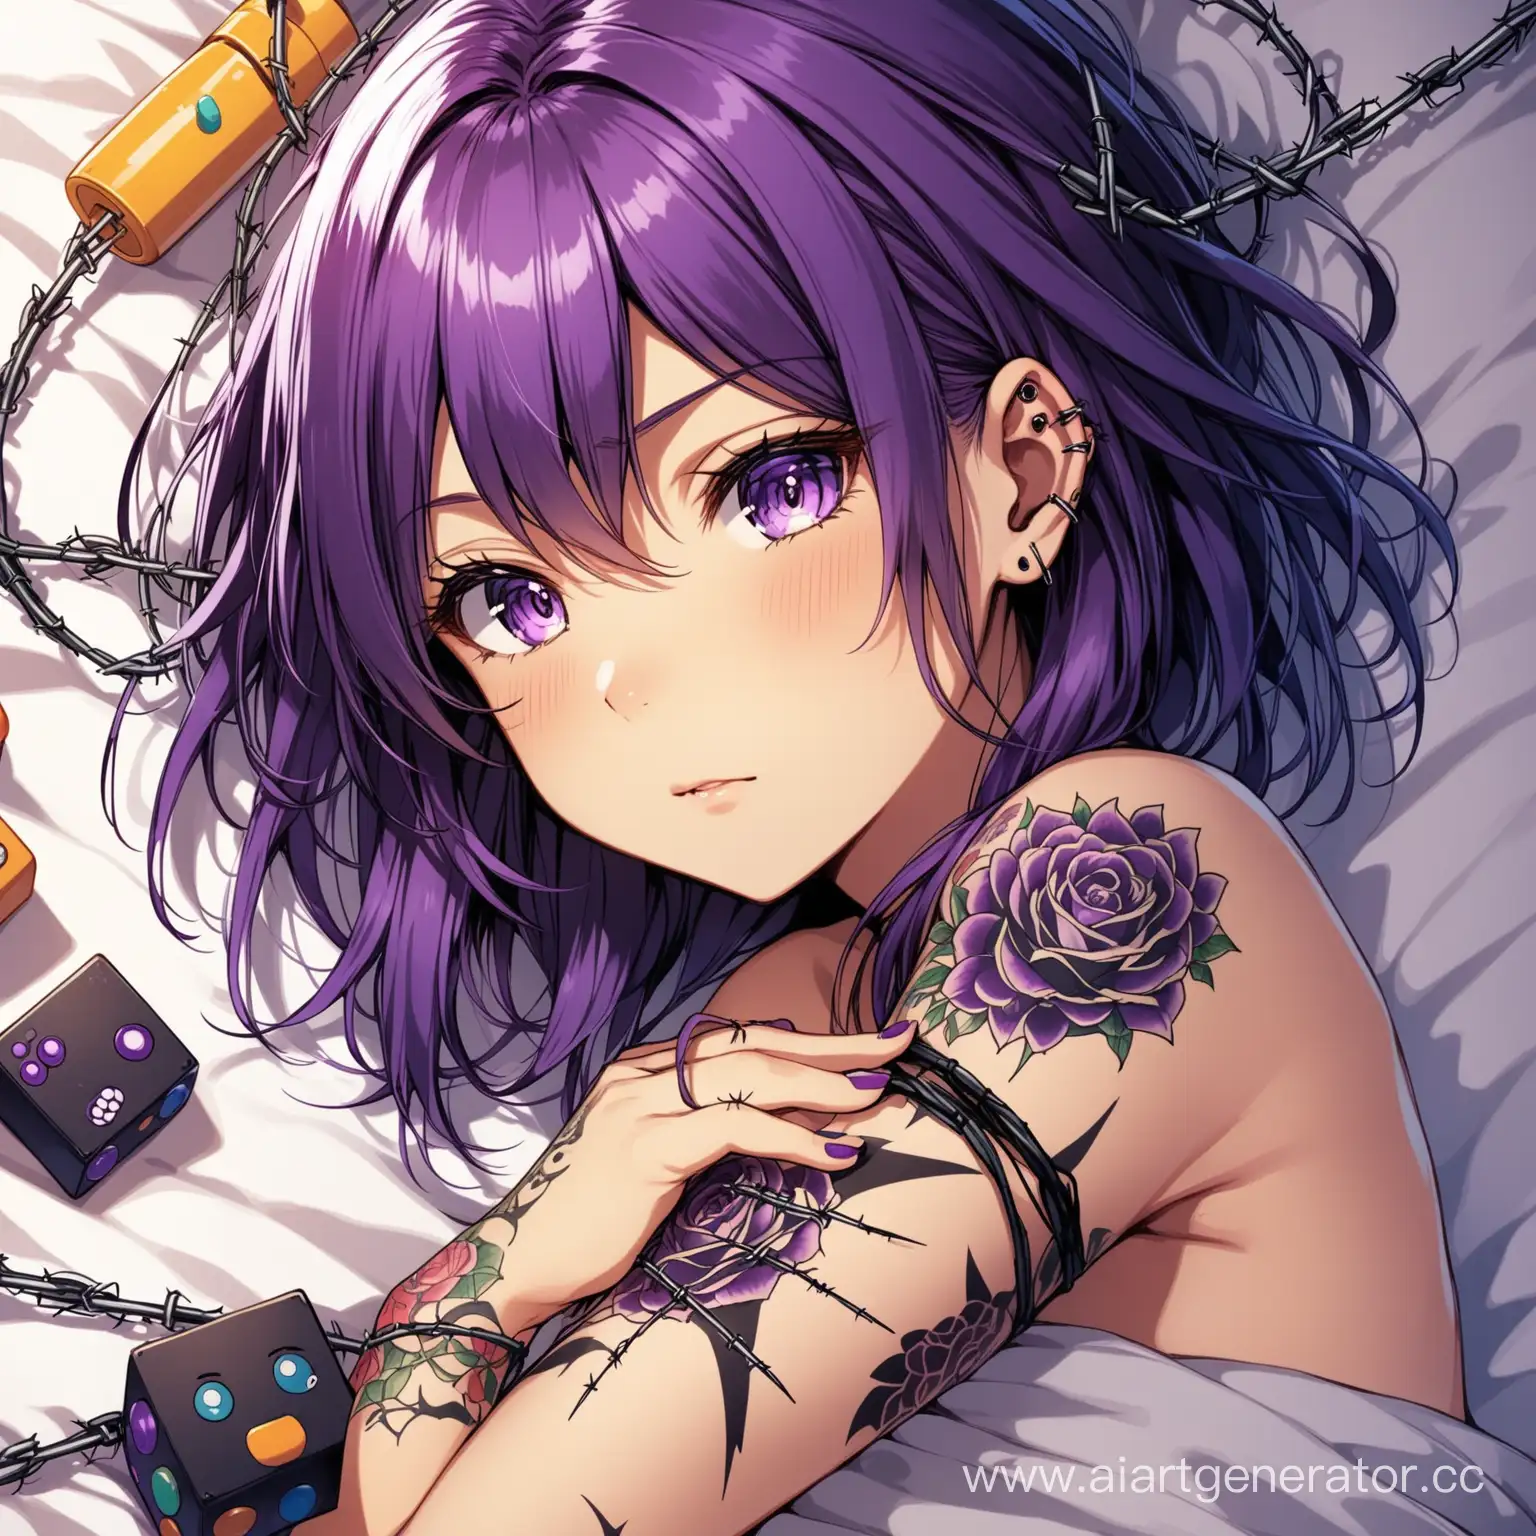 сгенерируй аниме девочку с черно фиолетовыми волосами и татуировкой проволоки на руке лежащую на кровати с детскими игрушками без пирсинга  